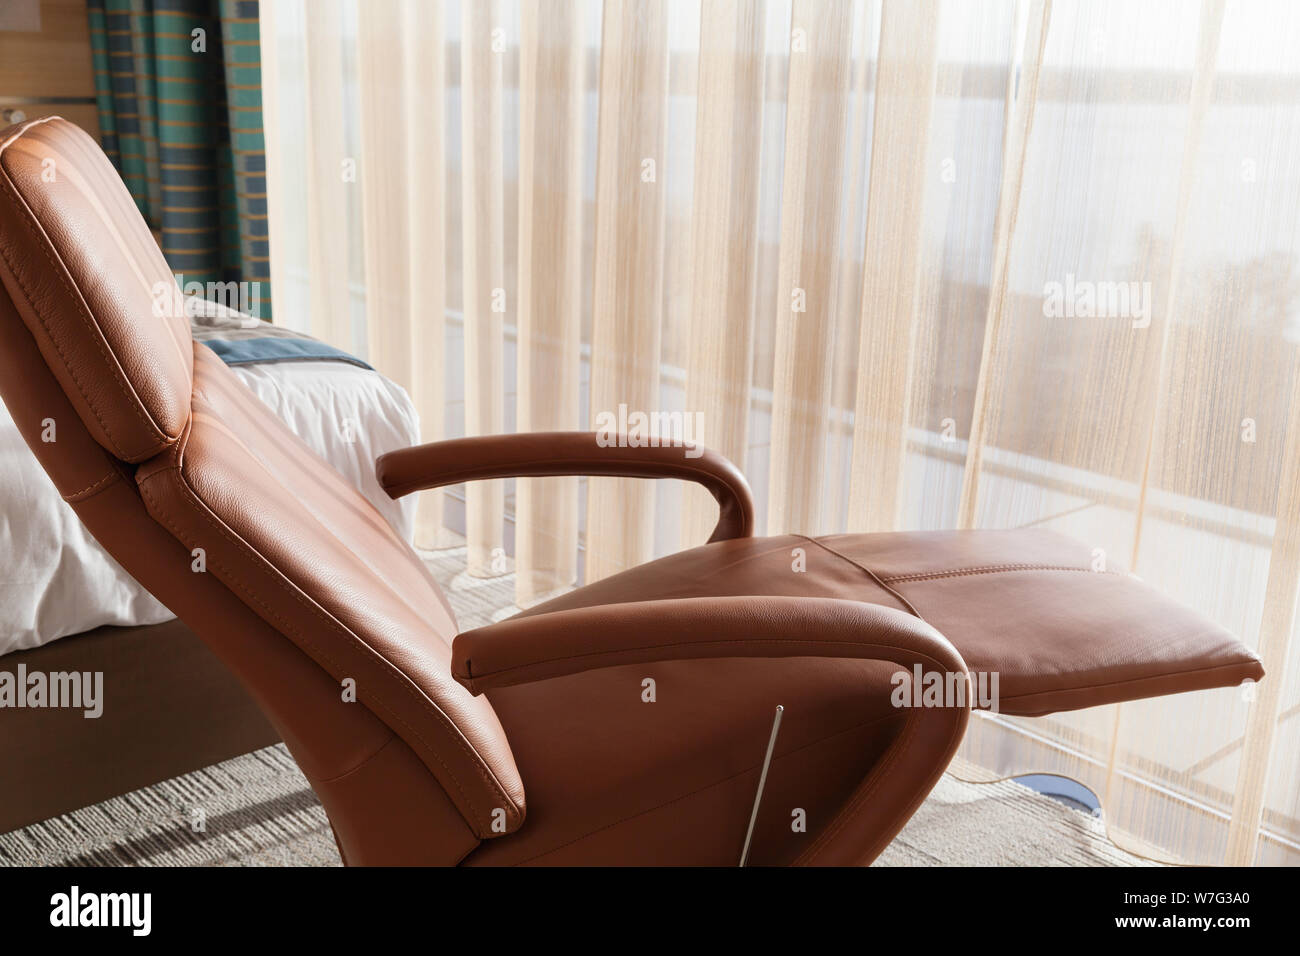 Komfortable, luxuriöse Leder Sessel steht in einem leeren Raum durch das Fenster Stockfoto